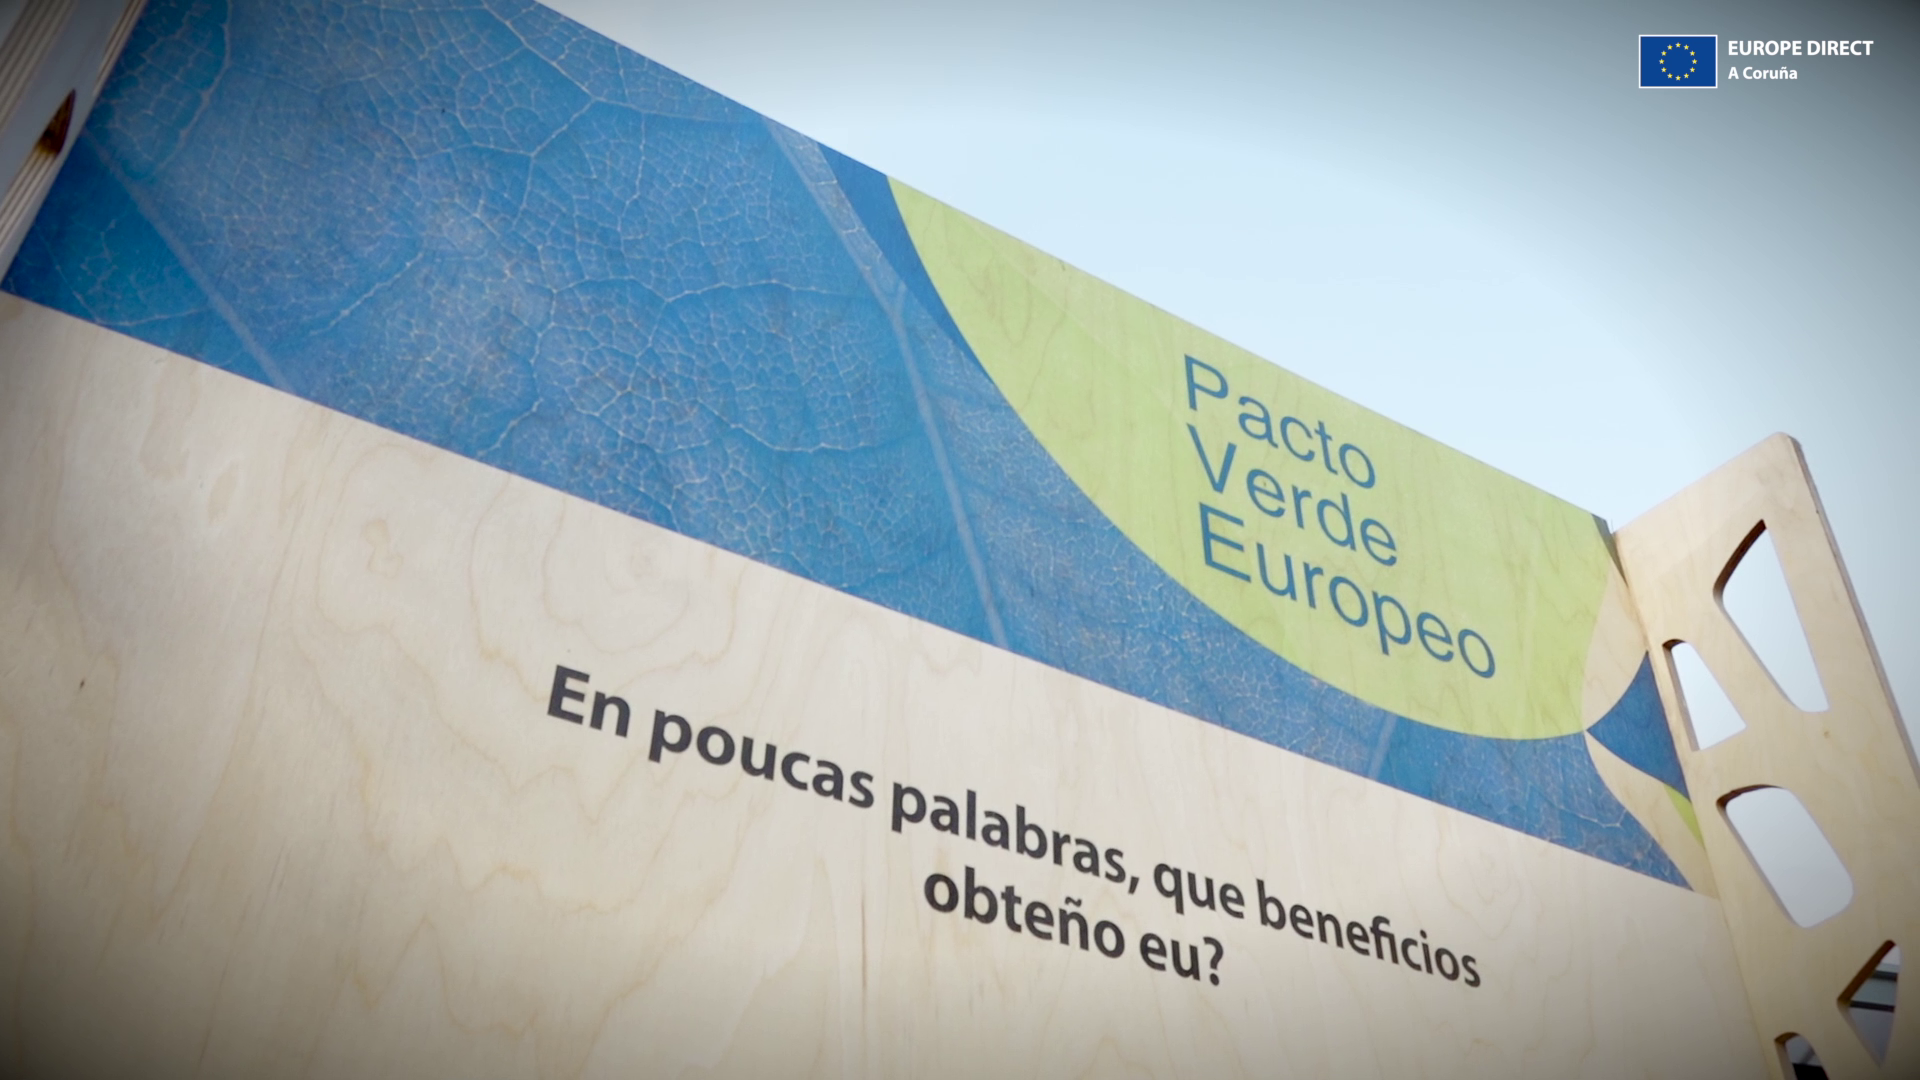 Exposición Pacto Verde Europeo 2022